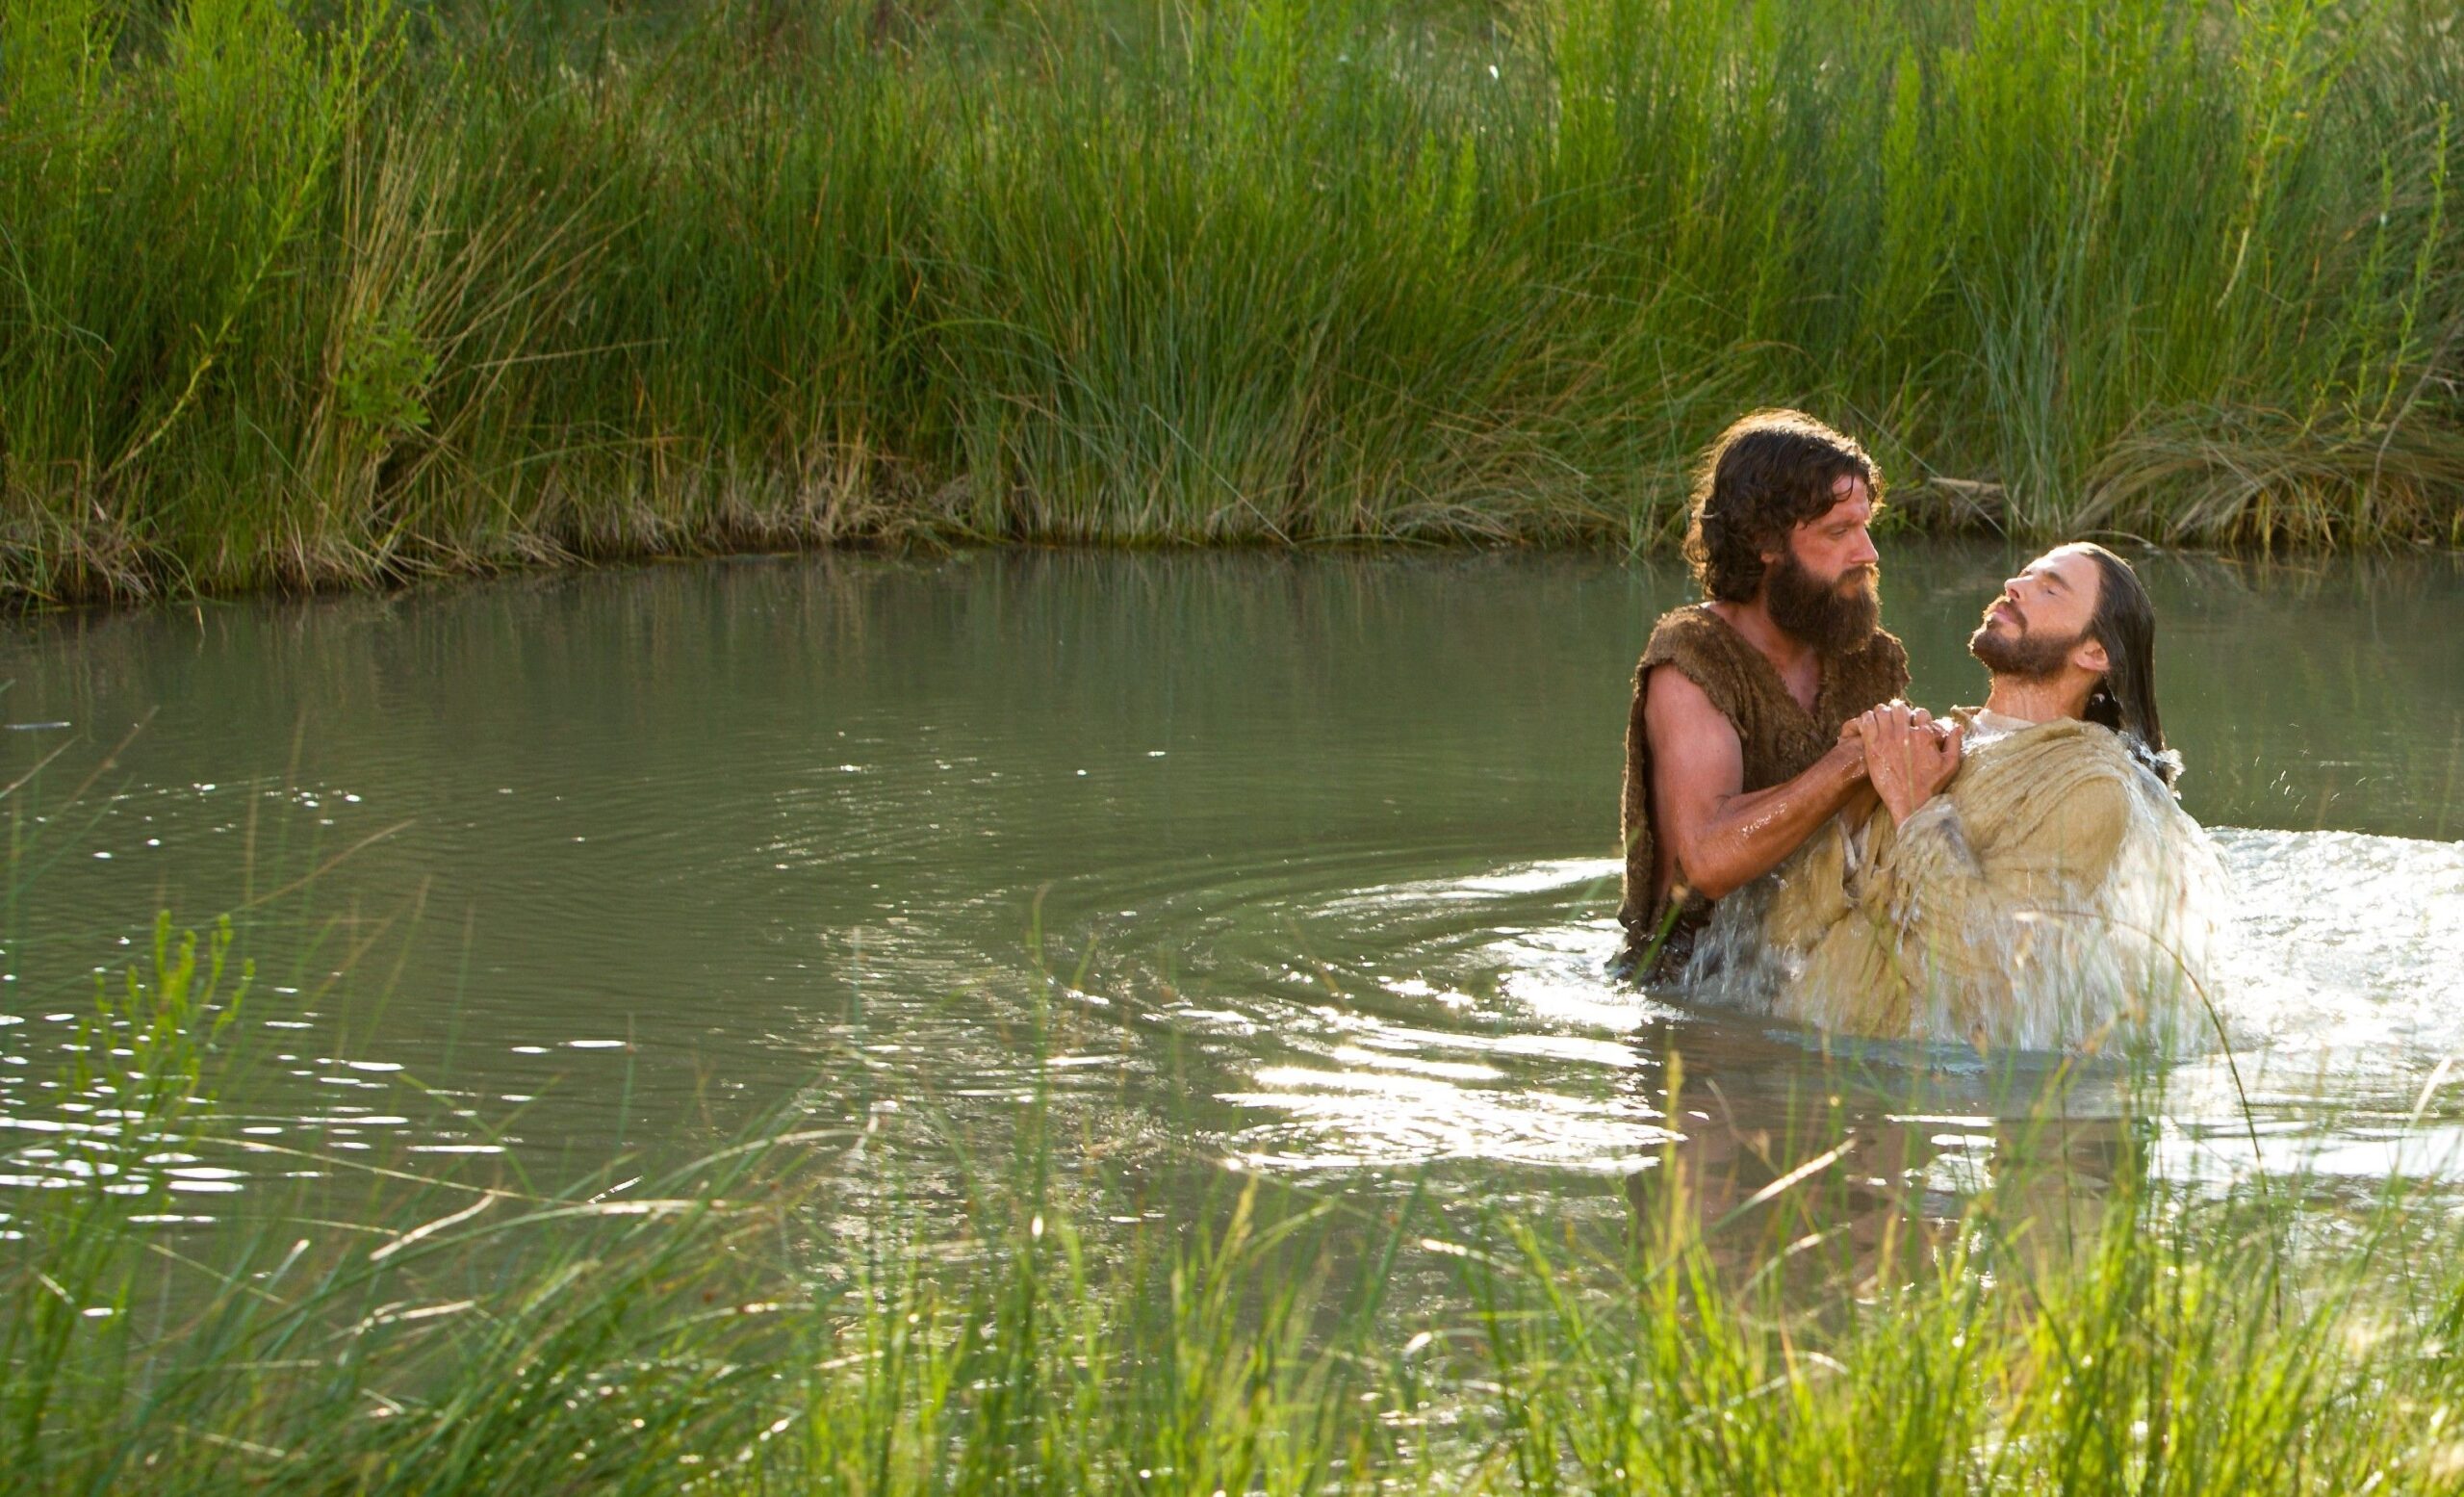 El bautismo de Cristo